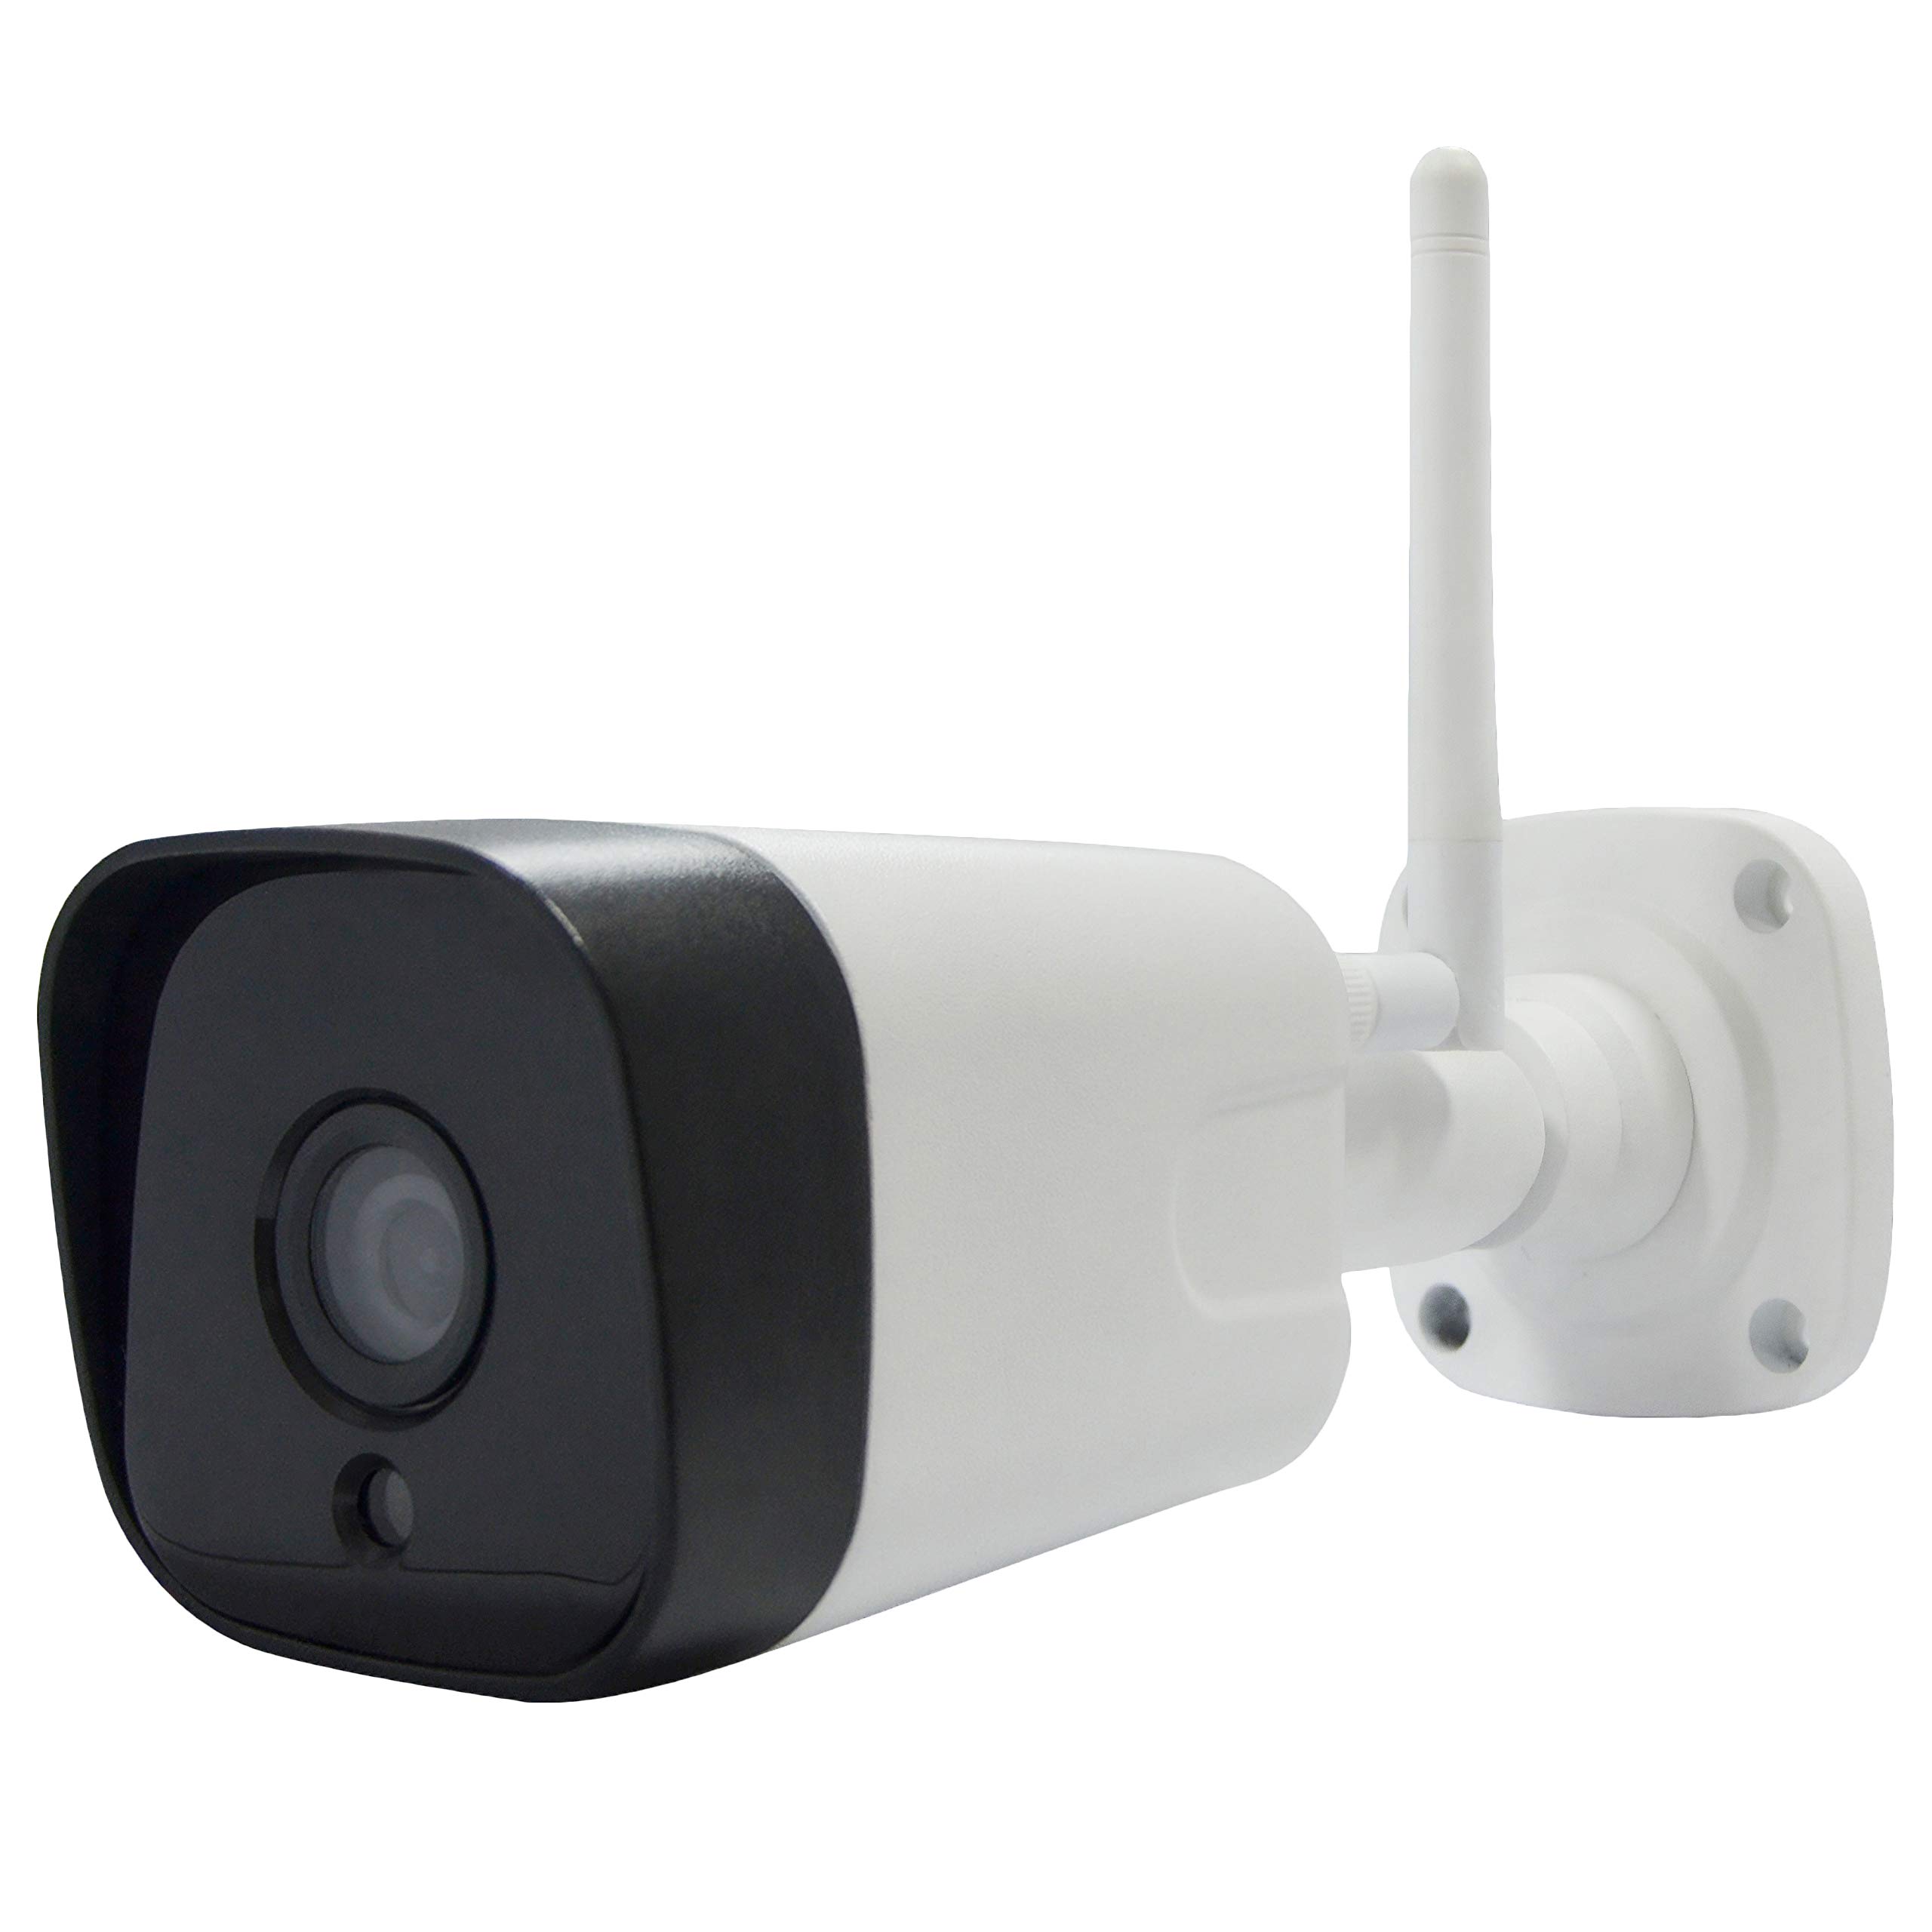 Superior Security iCM002 Überwachungskamera für den Außenbereich, 10800p, 2,4 GHz, HD, Nachtsicht und Zwei-Wege-Audio, Bewegungsabfang, manueller Zoom